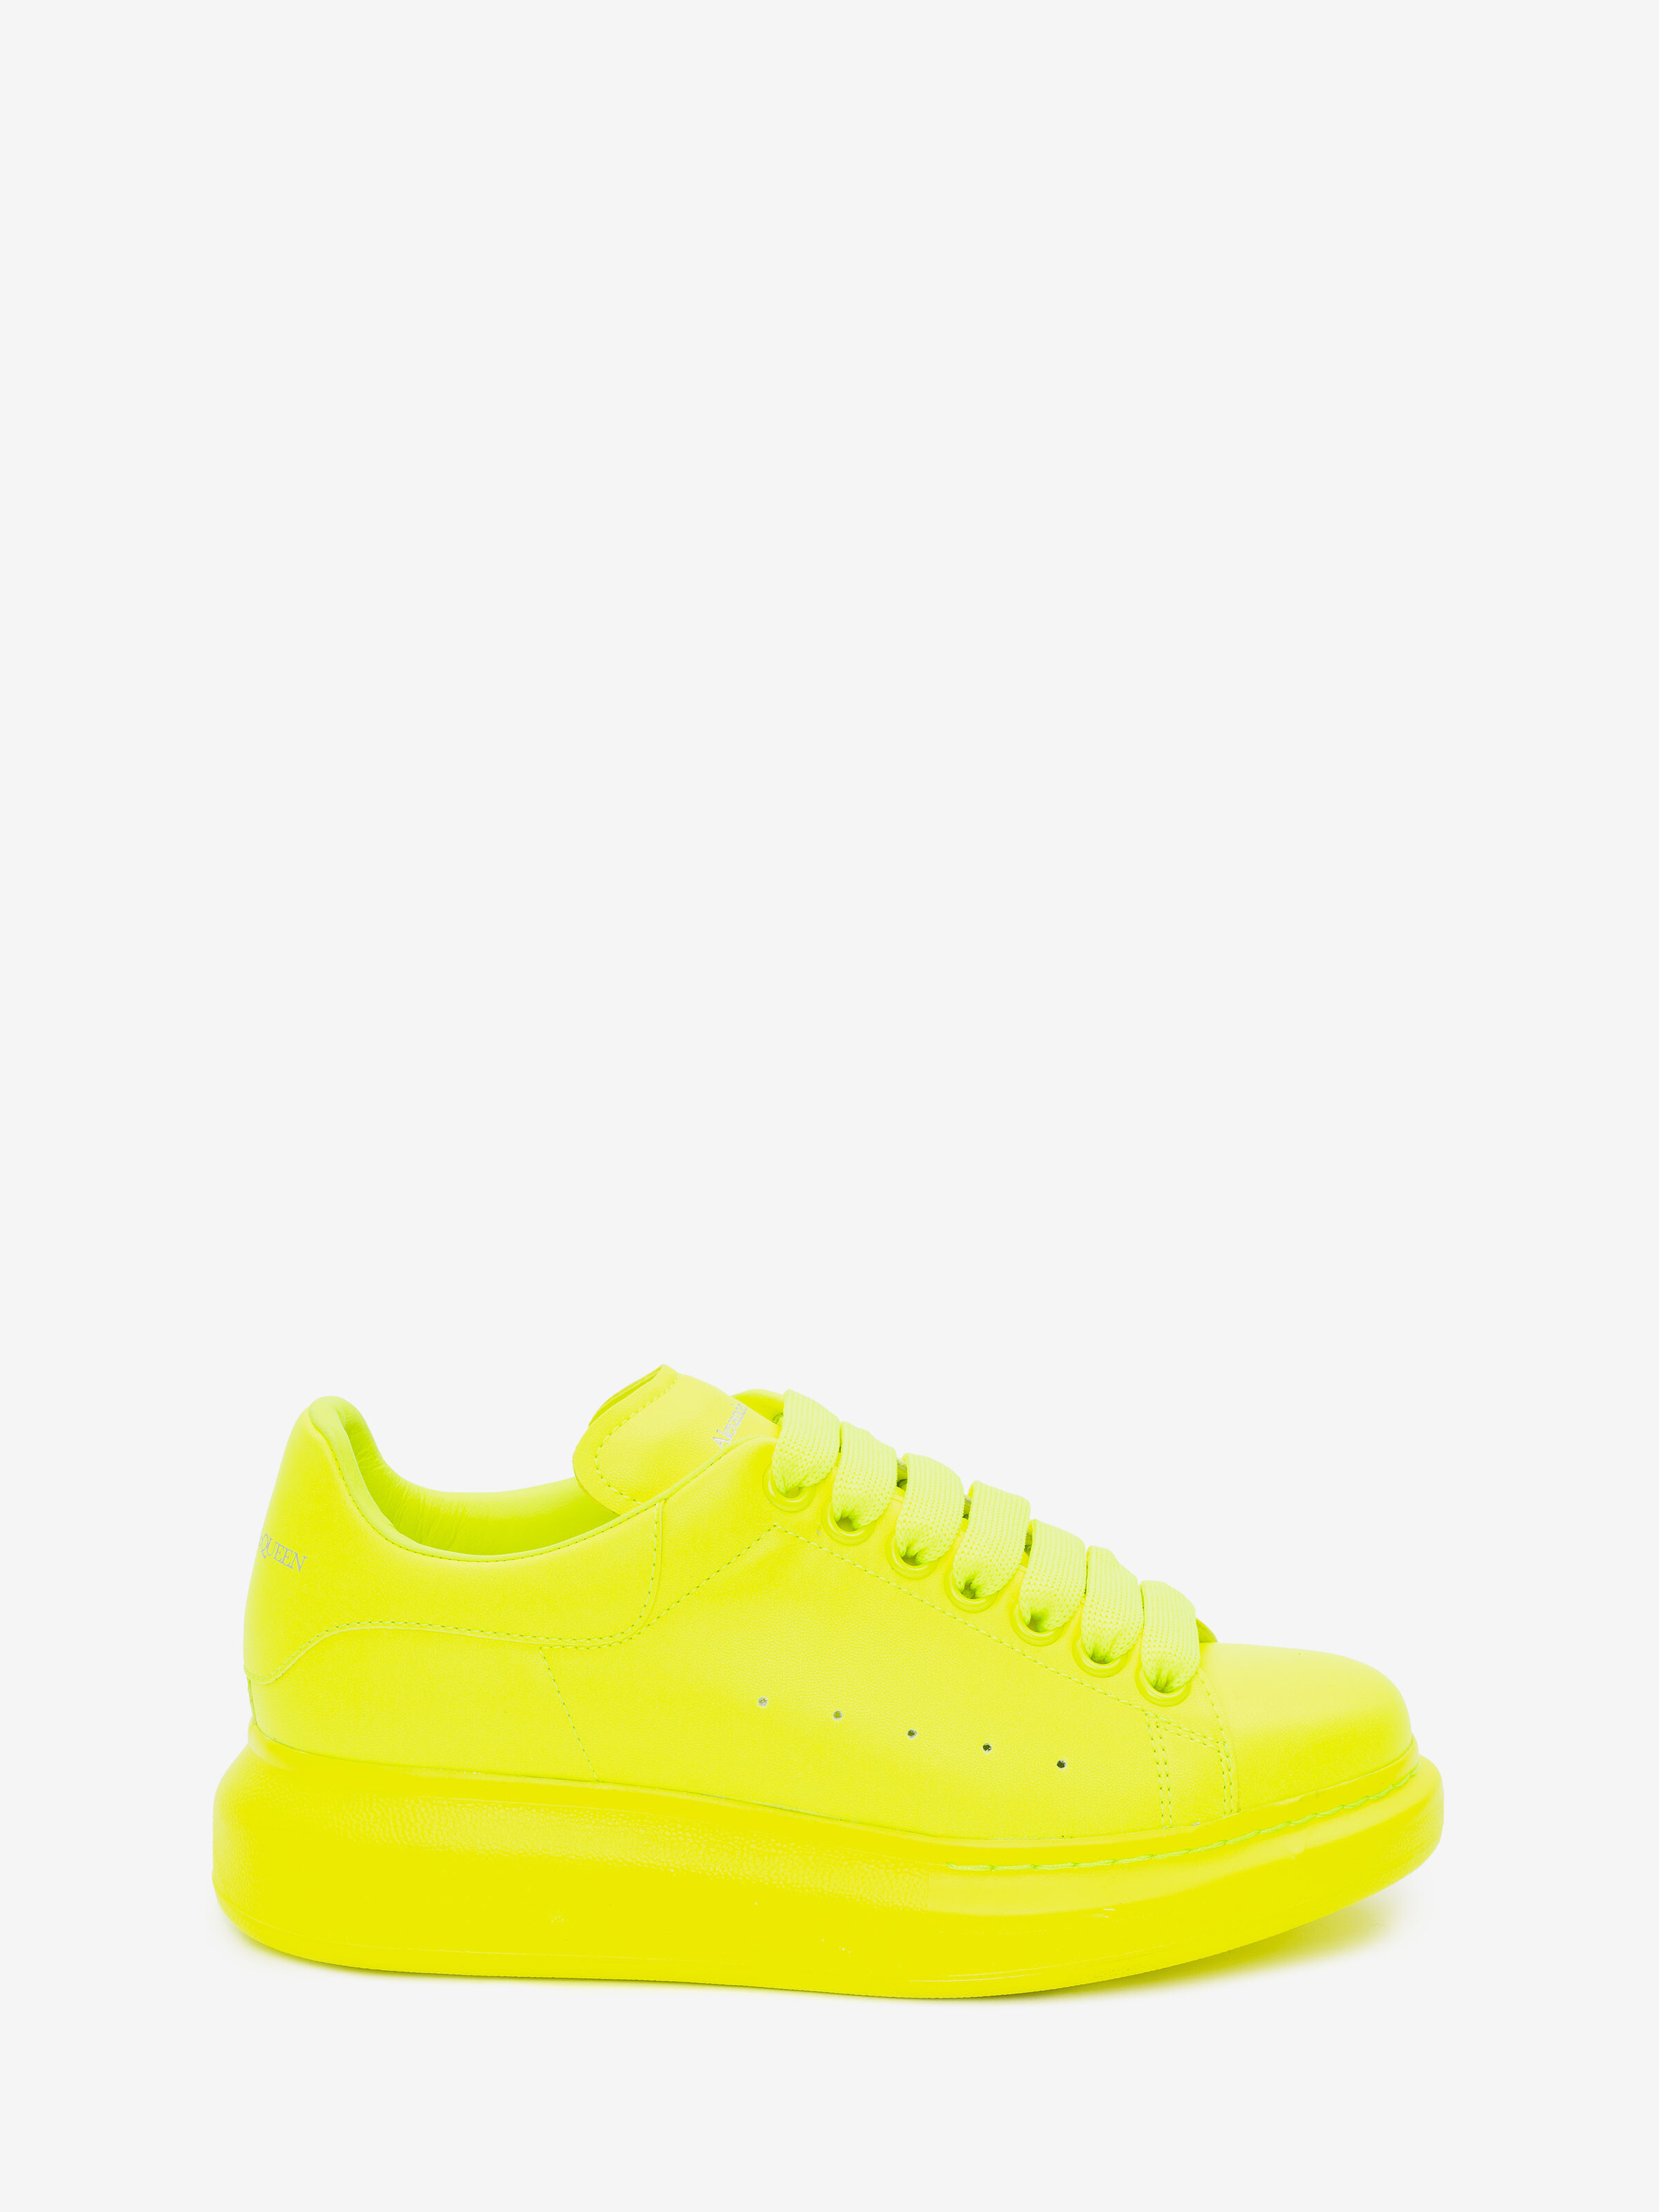 alexander mcqueen yellow shoes